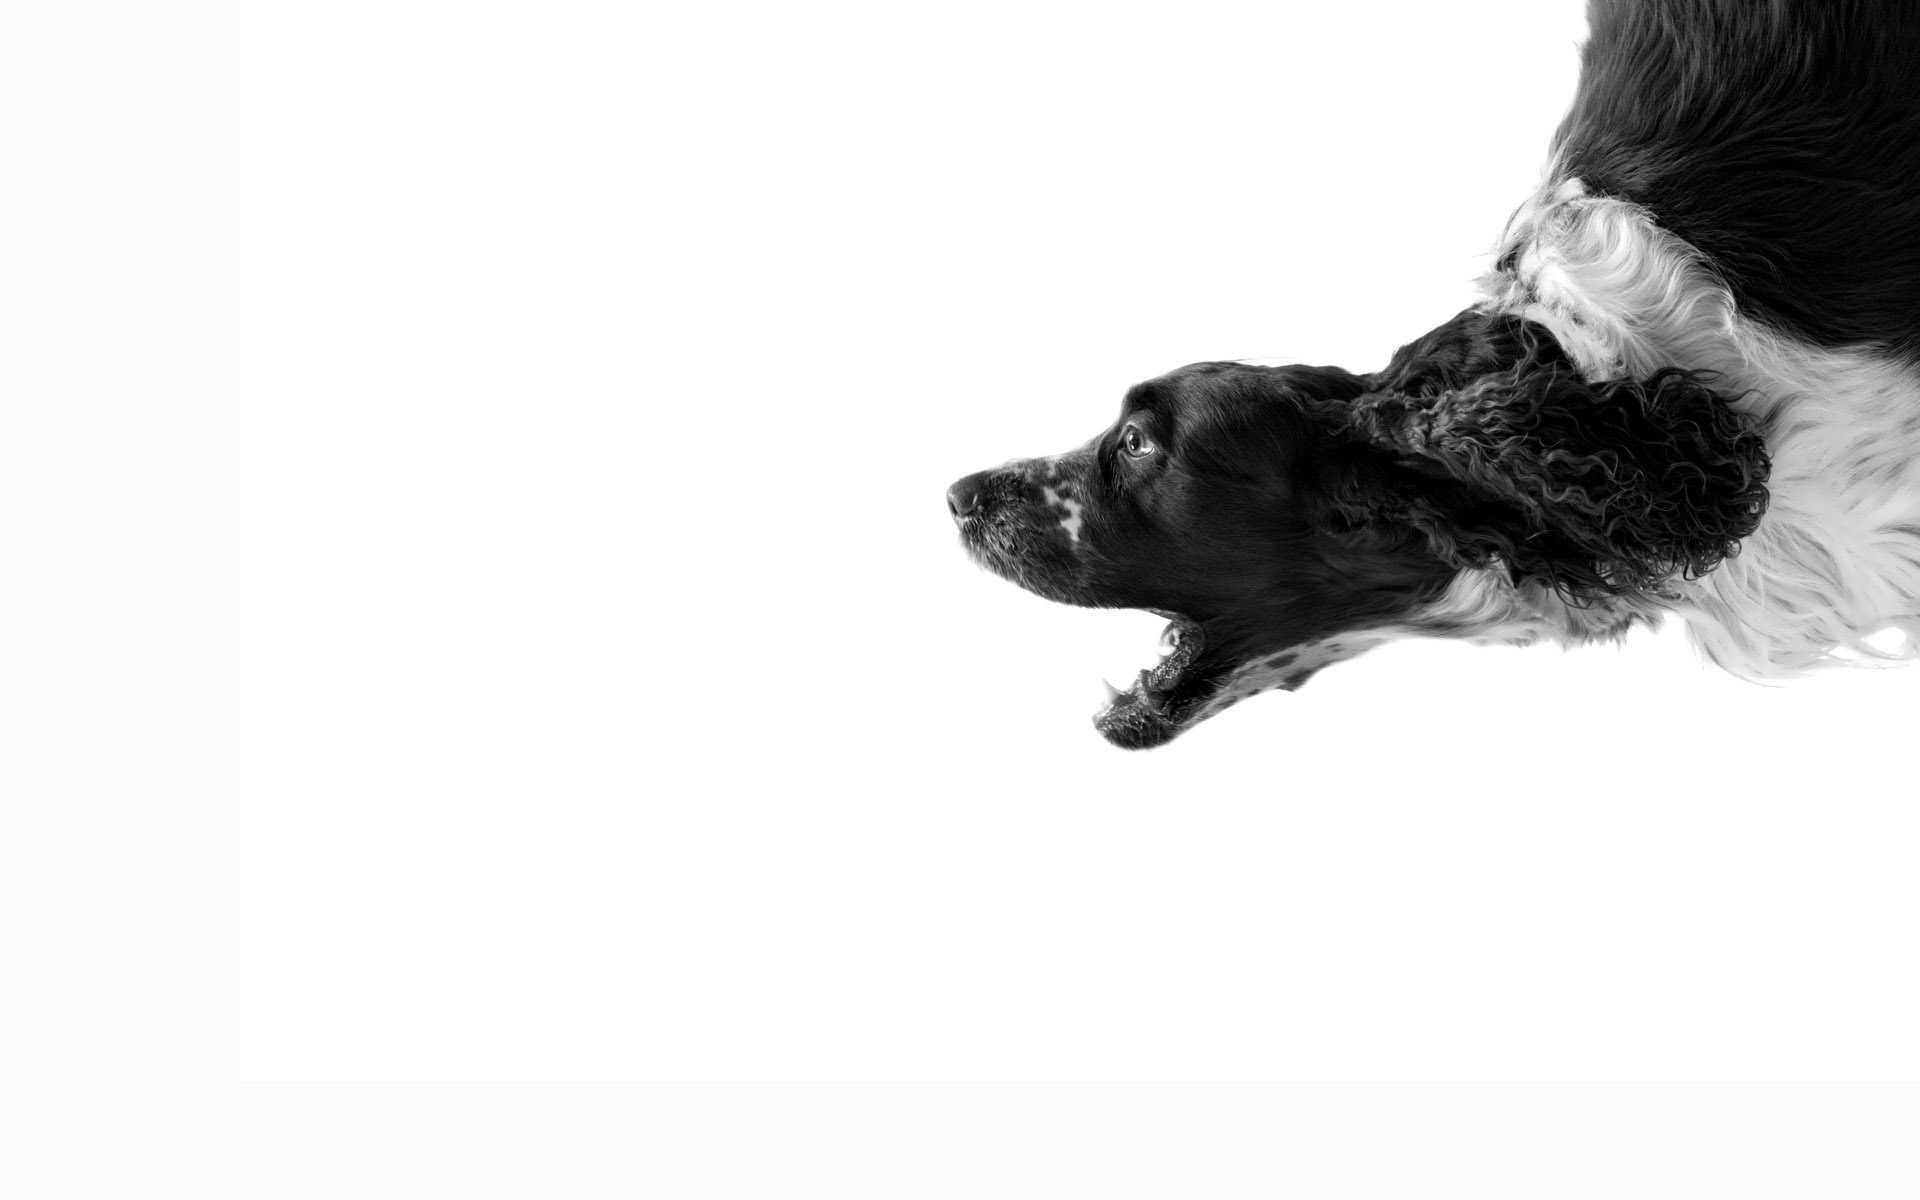 Скачать обои бесплатно Животные, Собаки, Артфото картинка на рабочий стол ПК